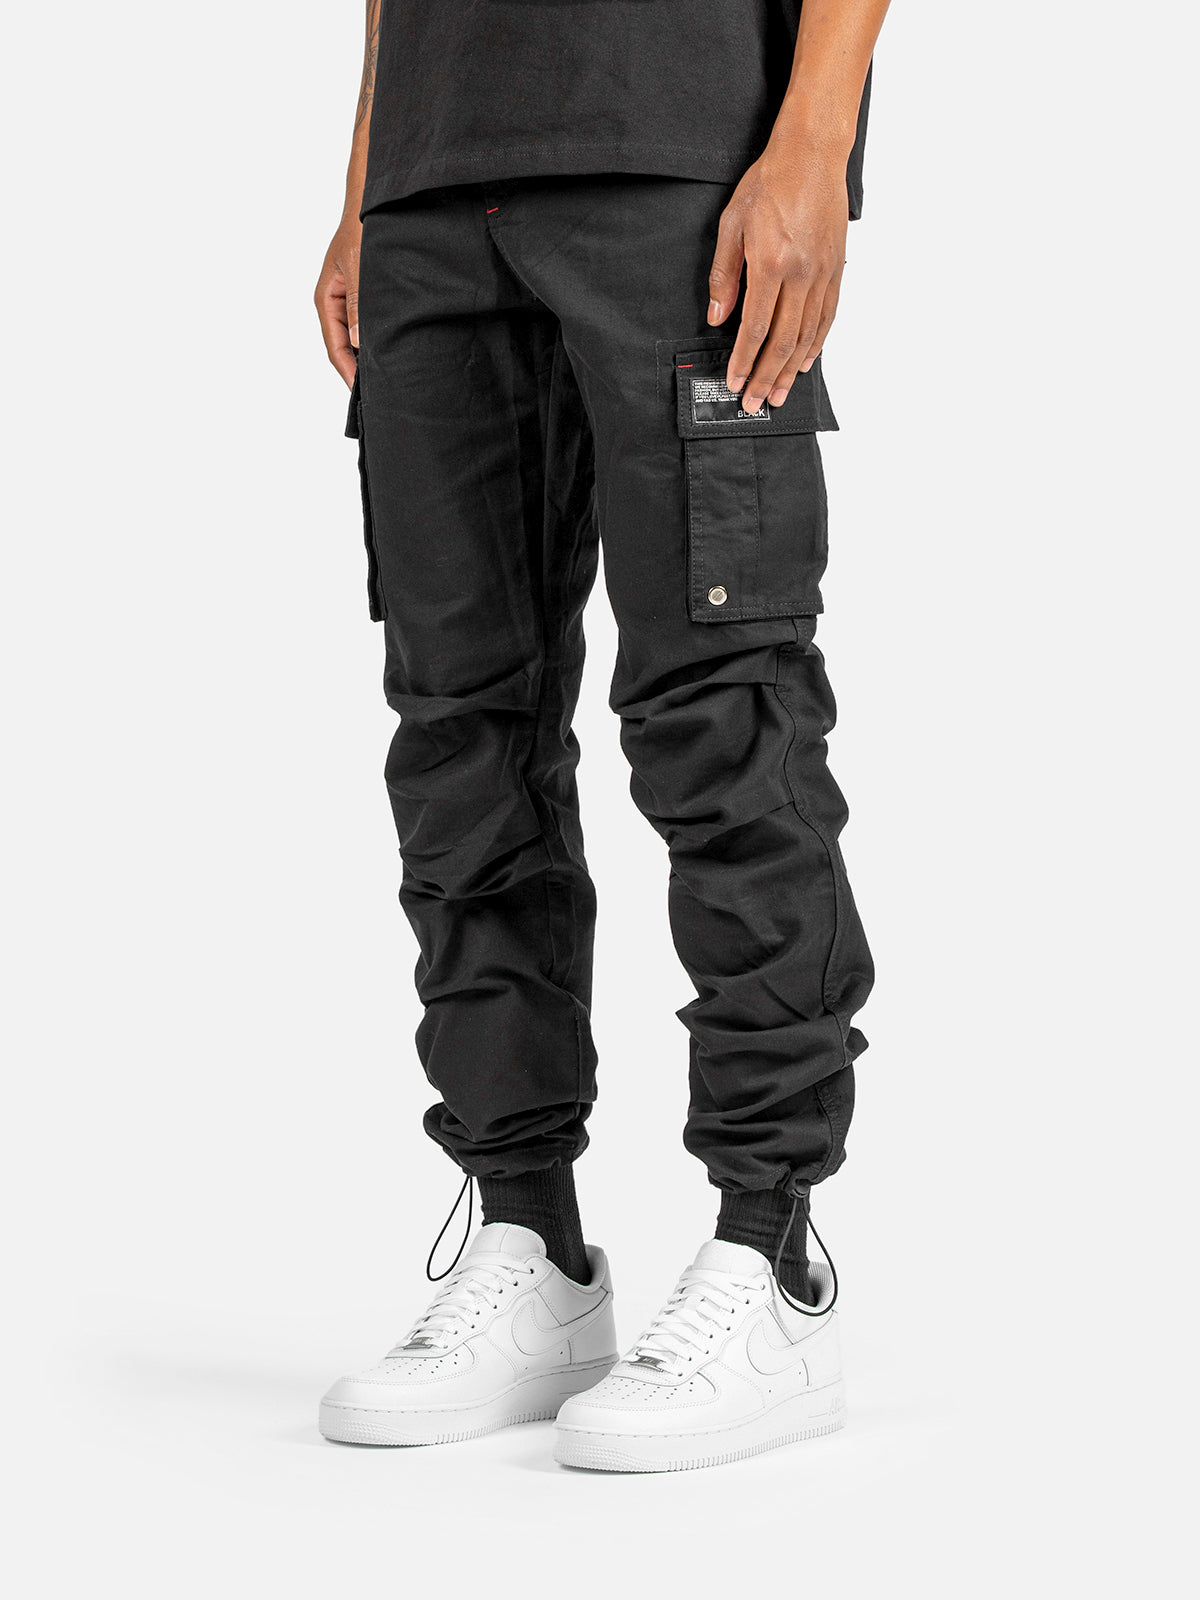 C9 Cargo Pants - Black | Blacktailor – BLACKTAILOR